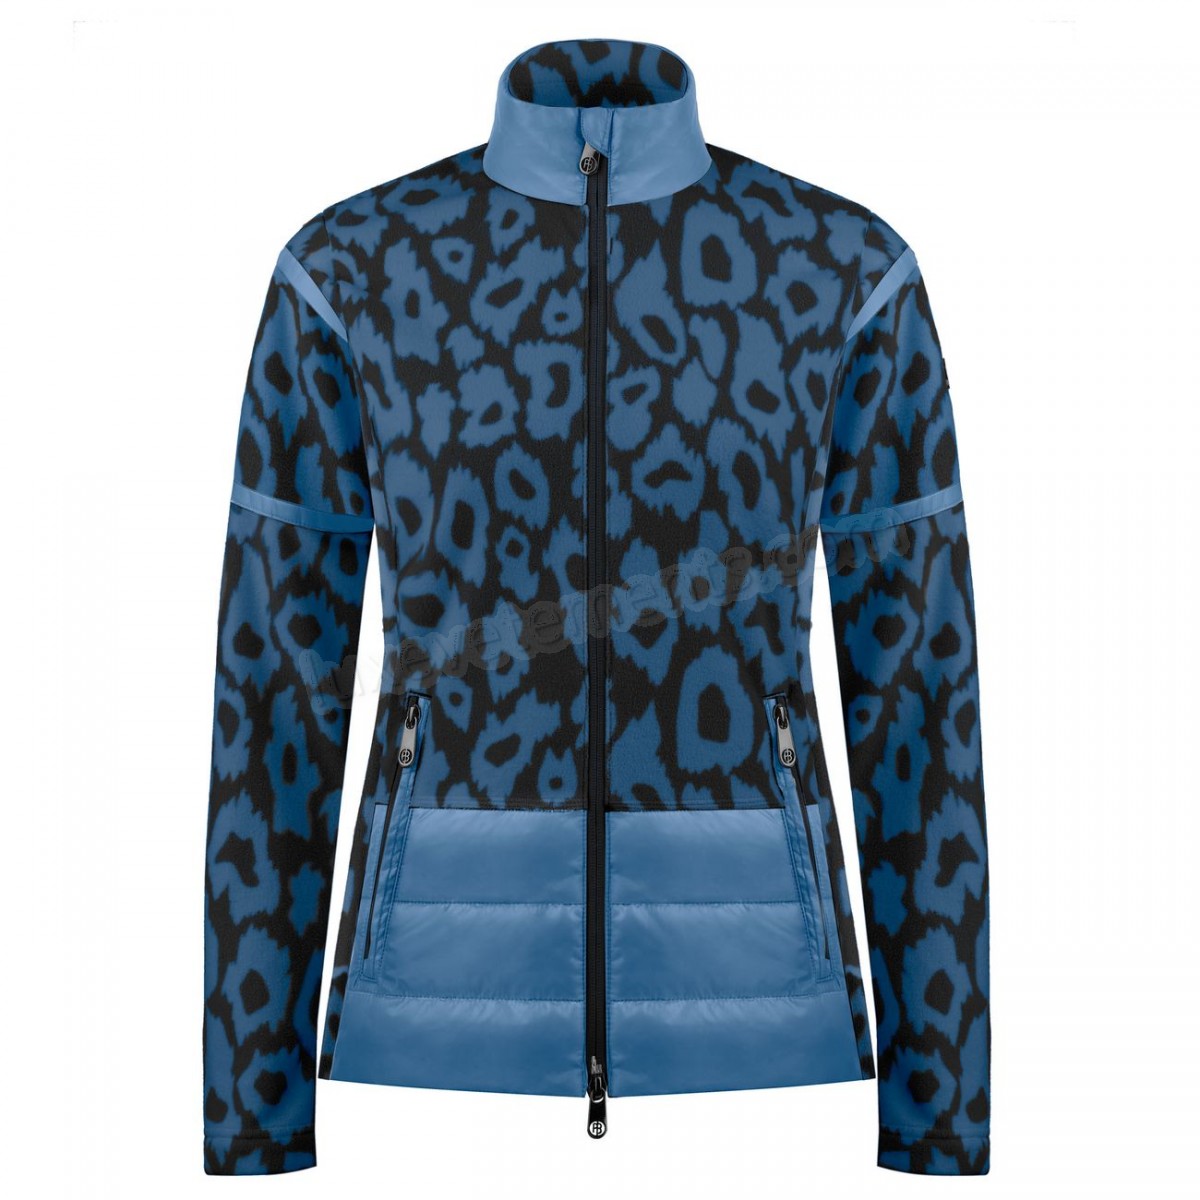 Poivre Blanc-Sports d'hiver femme POIVRE BLANC Veste Polaire Poivre Blanc Hybrid Fleece Jacket 1601 Panther Blue Femme Vente en ligne - -2